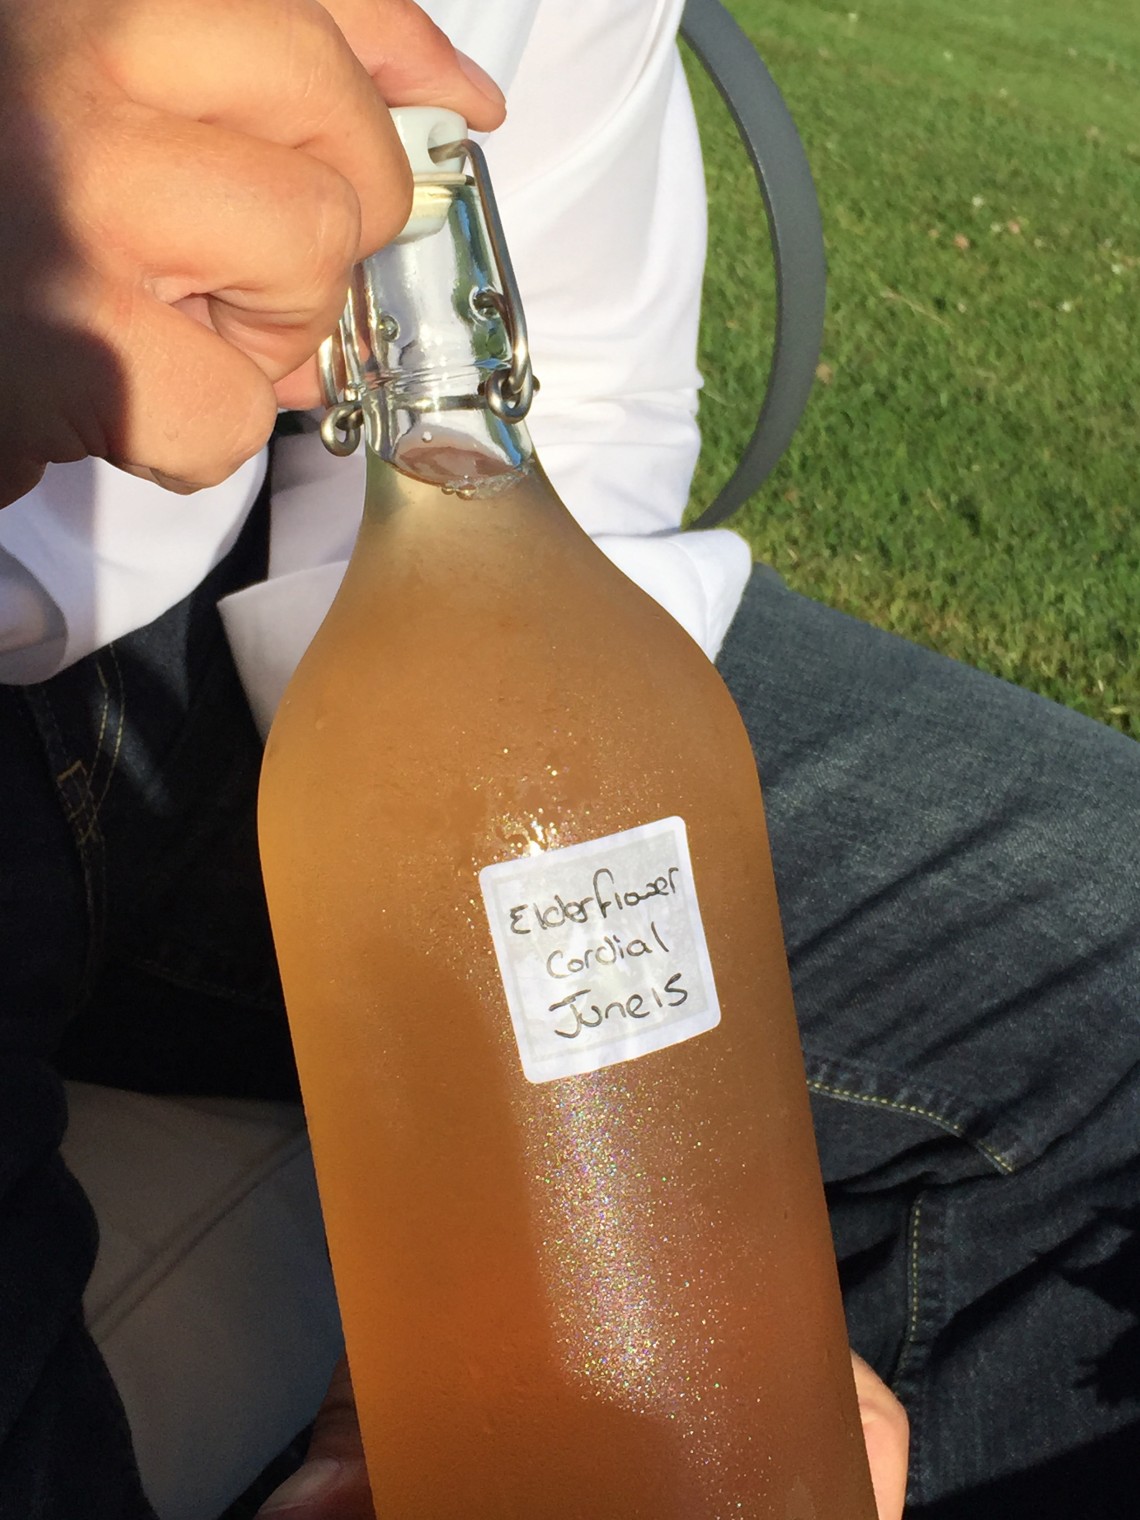 1-Bottle-of-home-made-Elderflower-Wine-milne-graden-coldstream-scottish-borders.